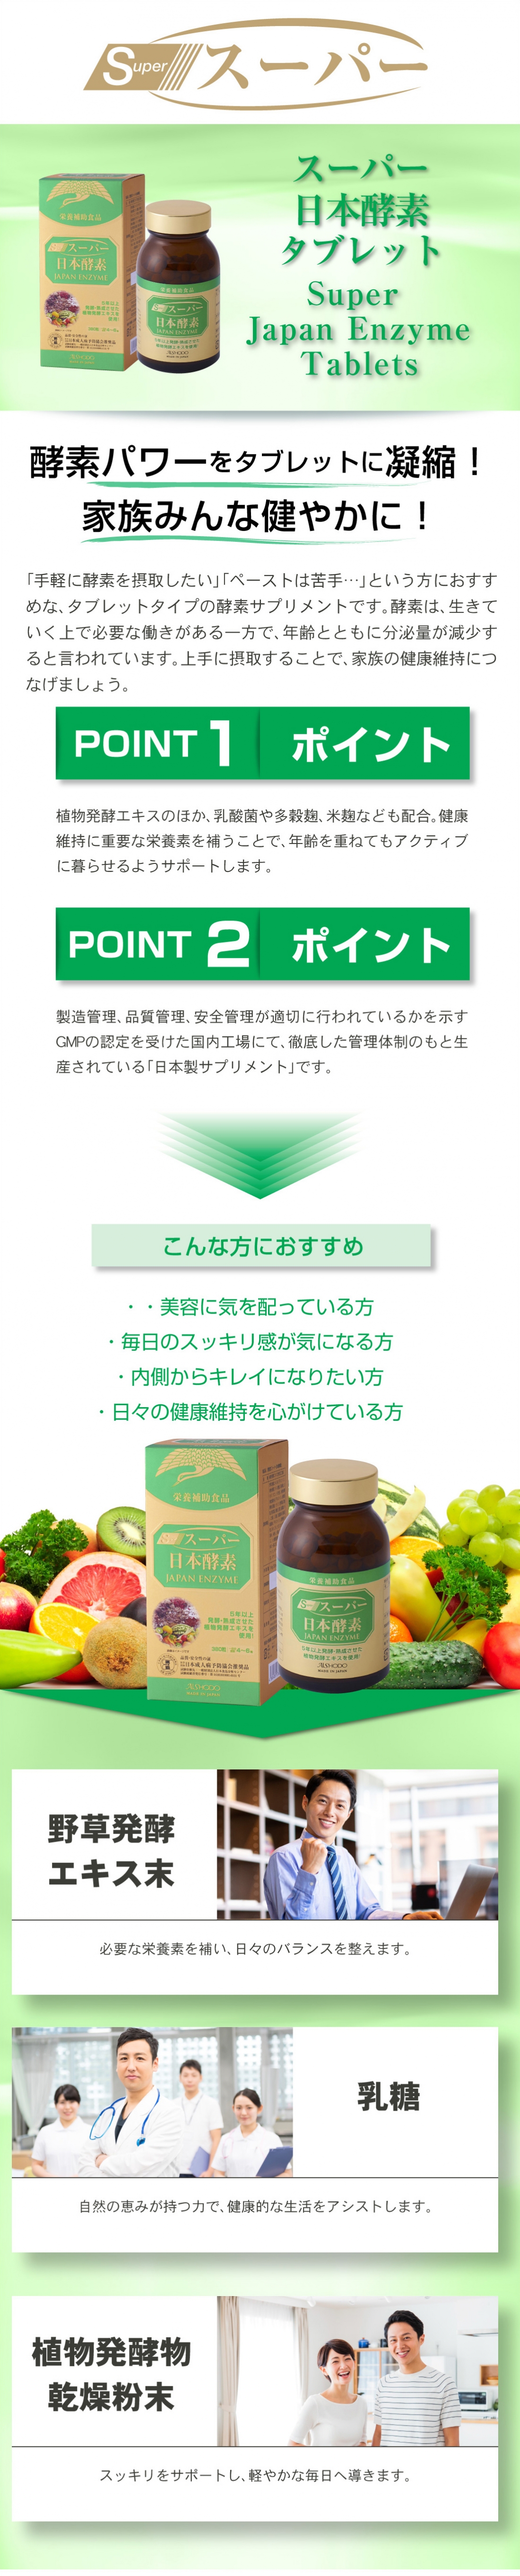 スーパー日本酵素 タブレット
Super Japan Enzyme Tablets